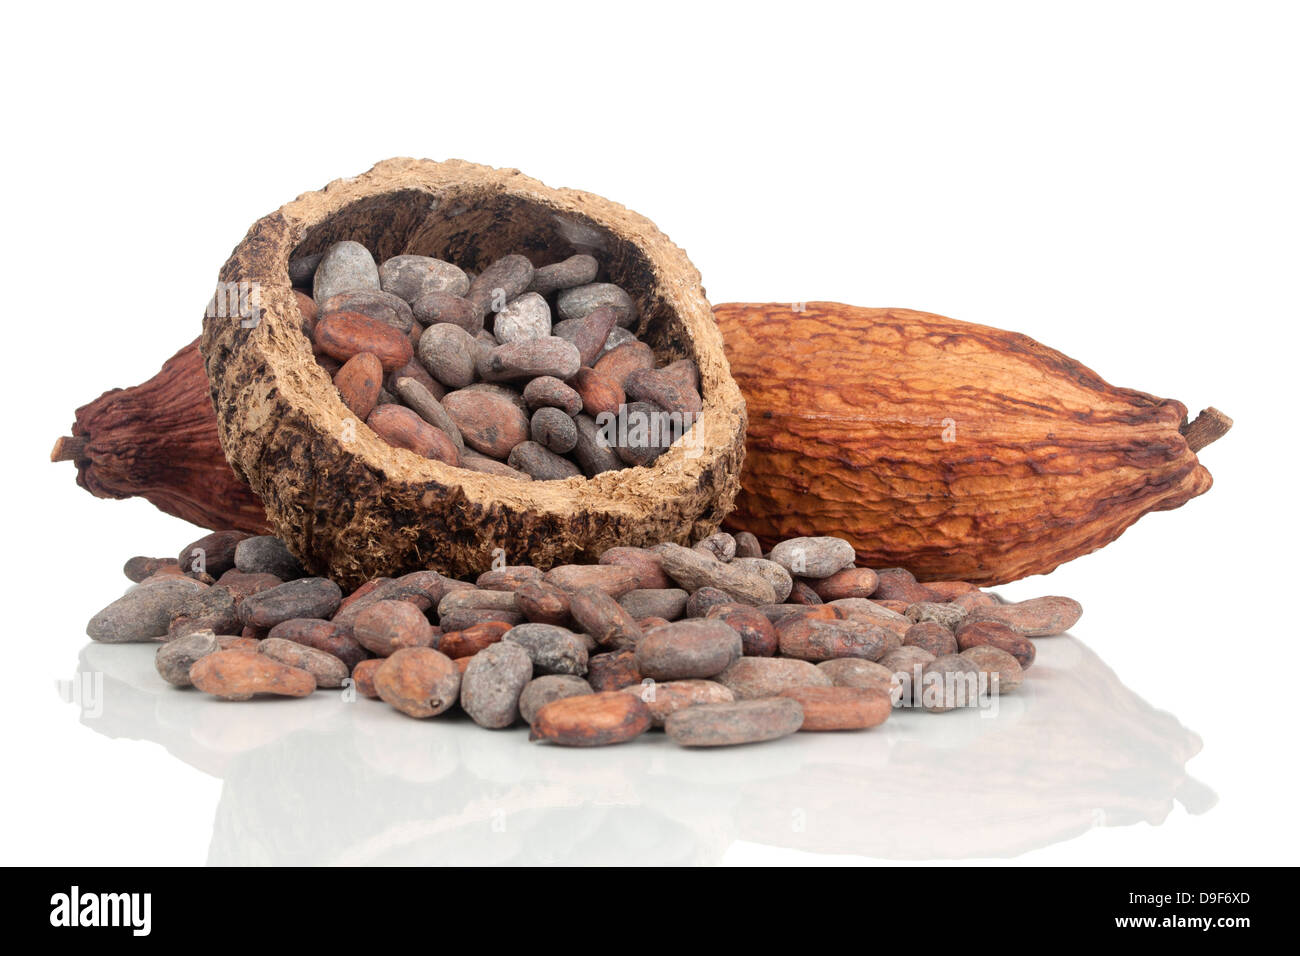 Les fèves de cacao et le cacao, les fèves de cacao et de fruits cabosse Banque D'Images